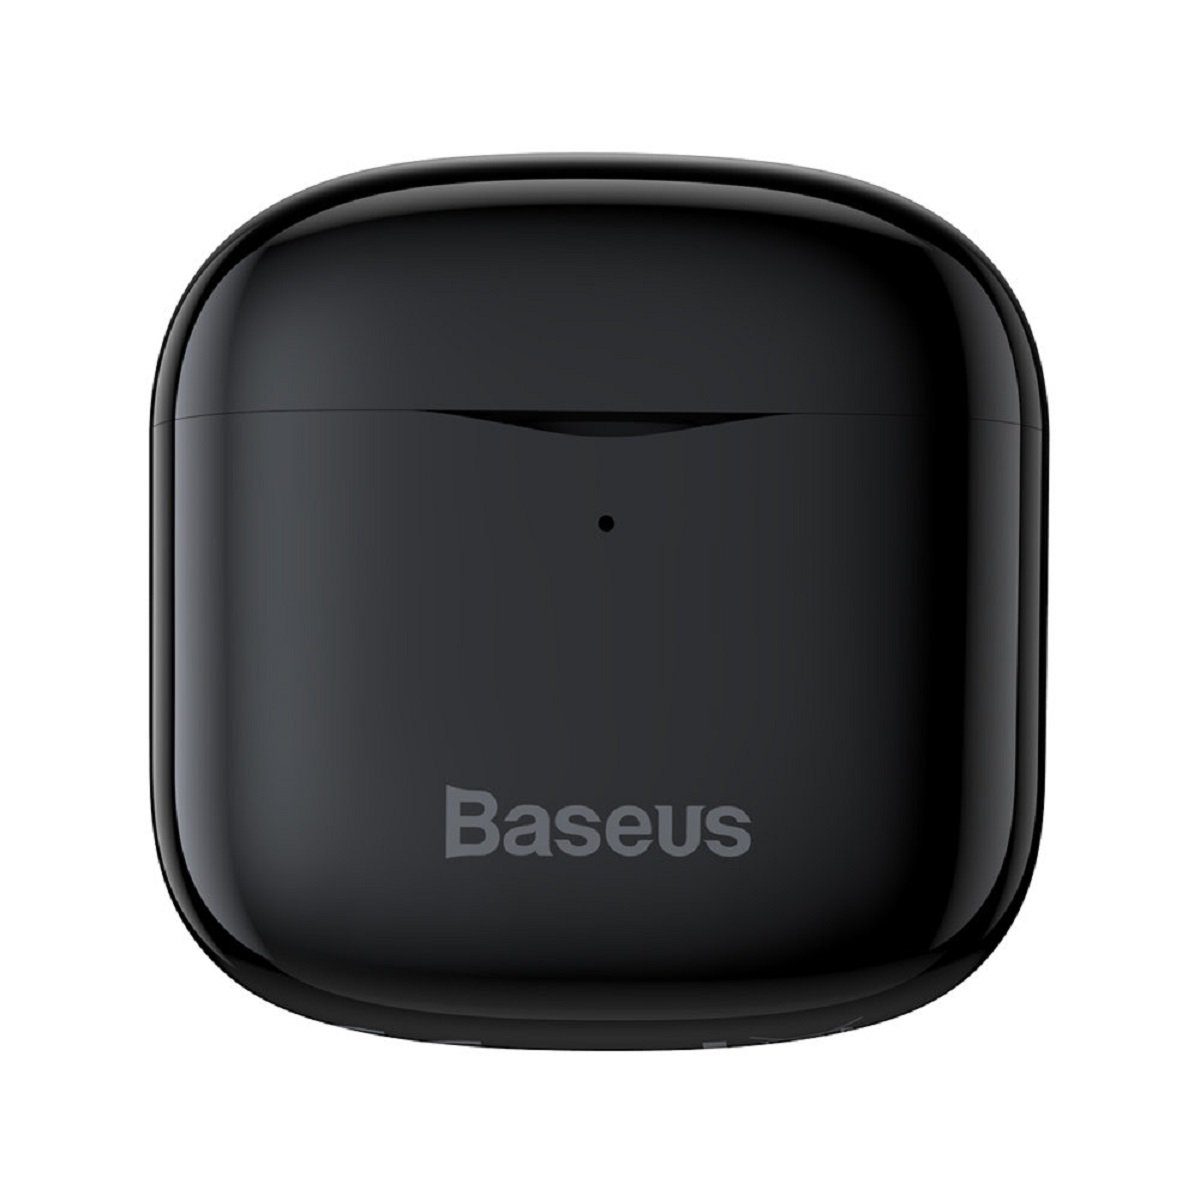 Baseus Baseus E3 Wireless Bluetooth Bluetooth, 5.0 Kopfhörer wasserdicht Touch kabellos) schwarz Control, Bluetooth-Kopfhörer (Bluetooth, IP64